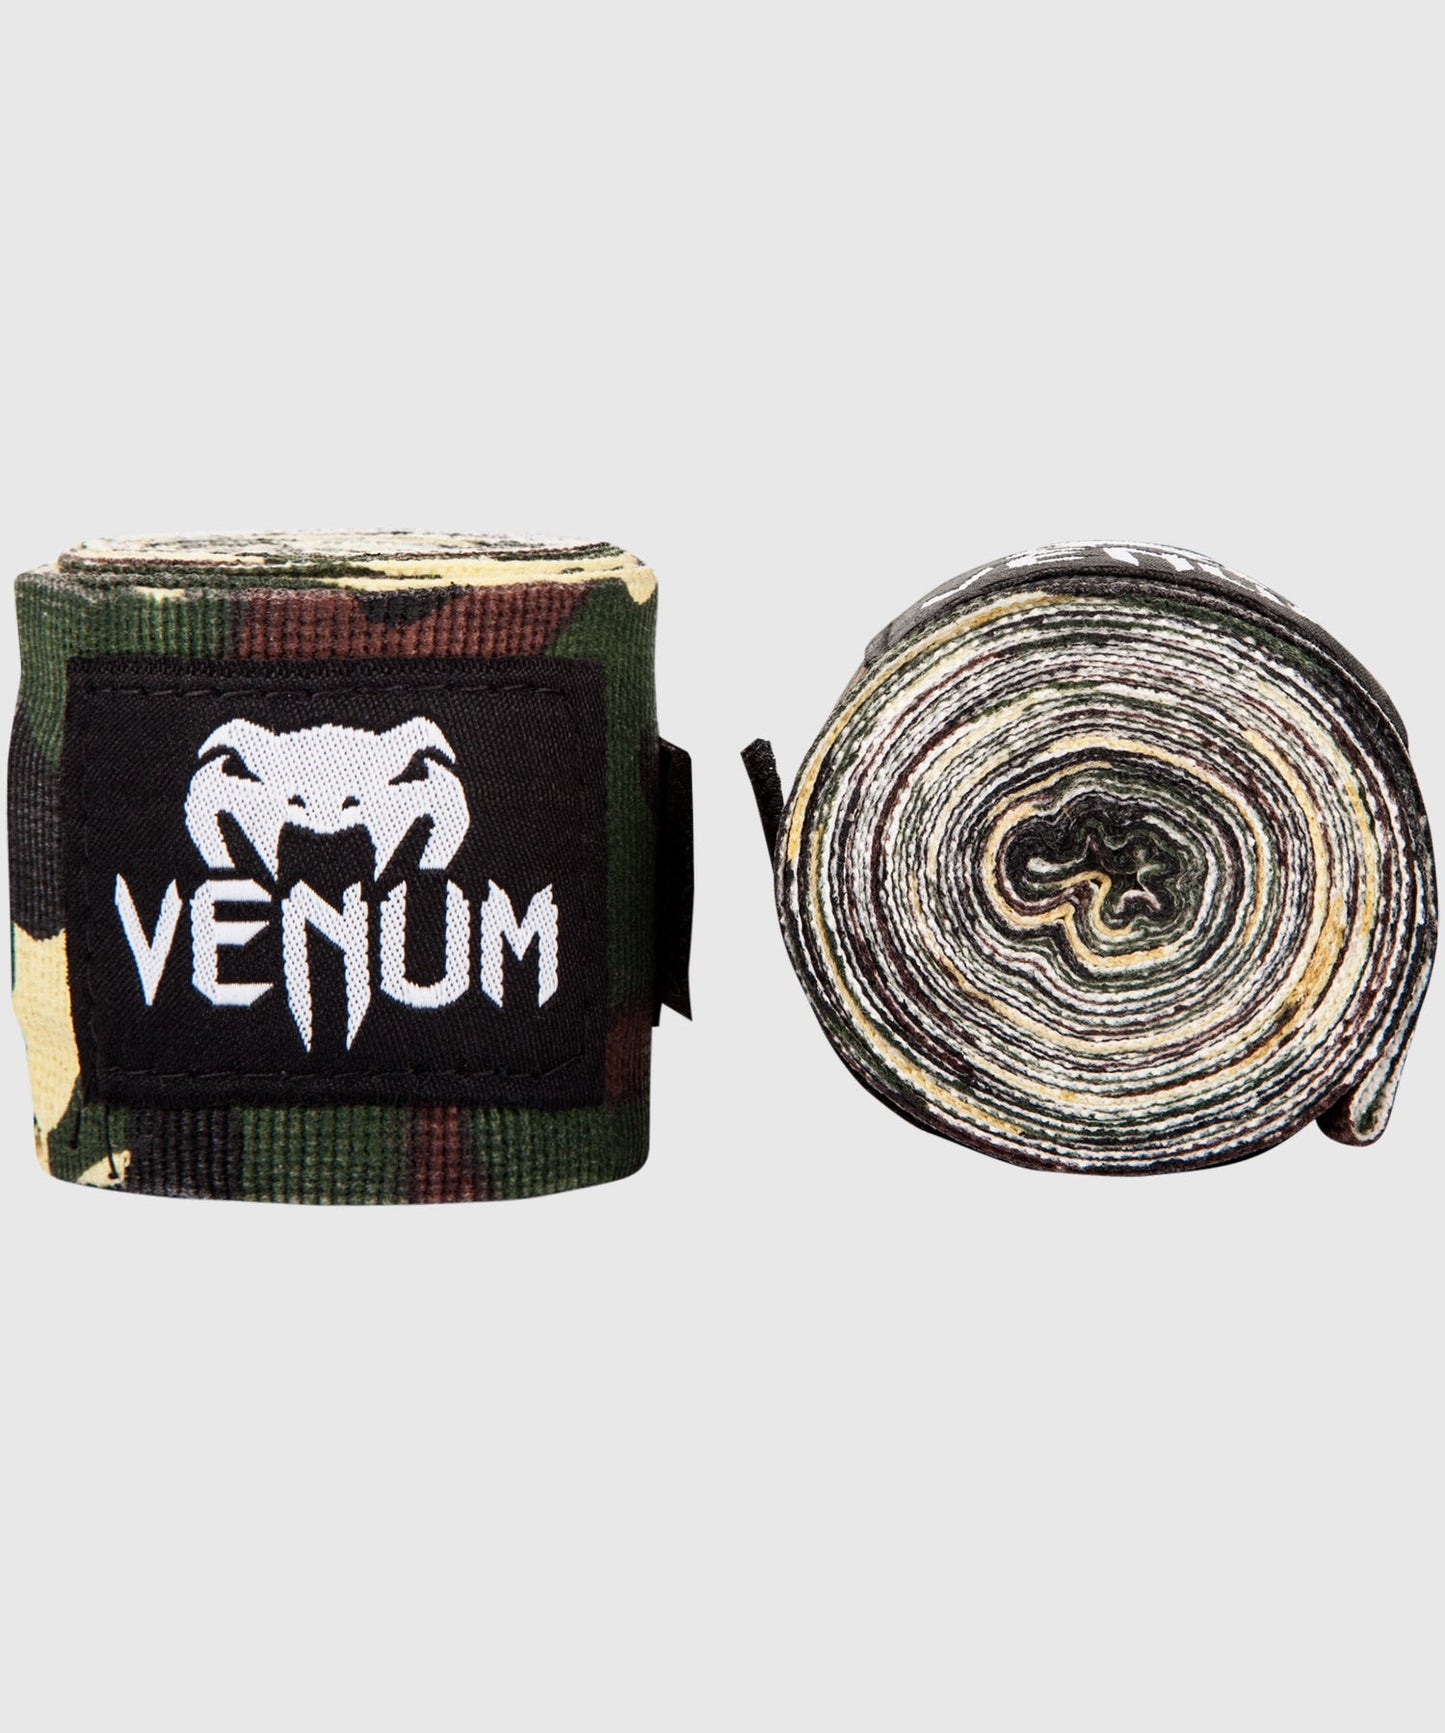 Venum Kontact Boxing Handwraps - 4m - Forest Camo